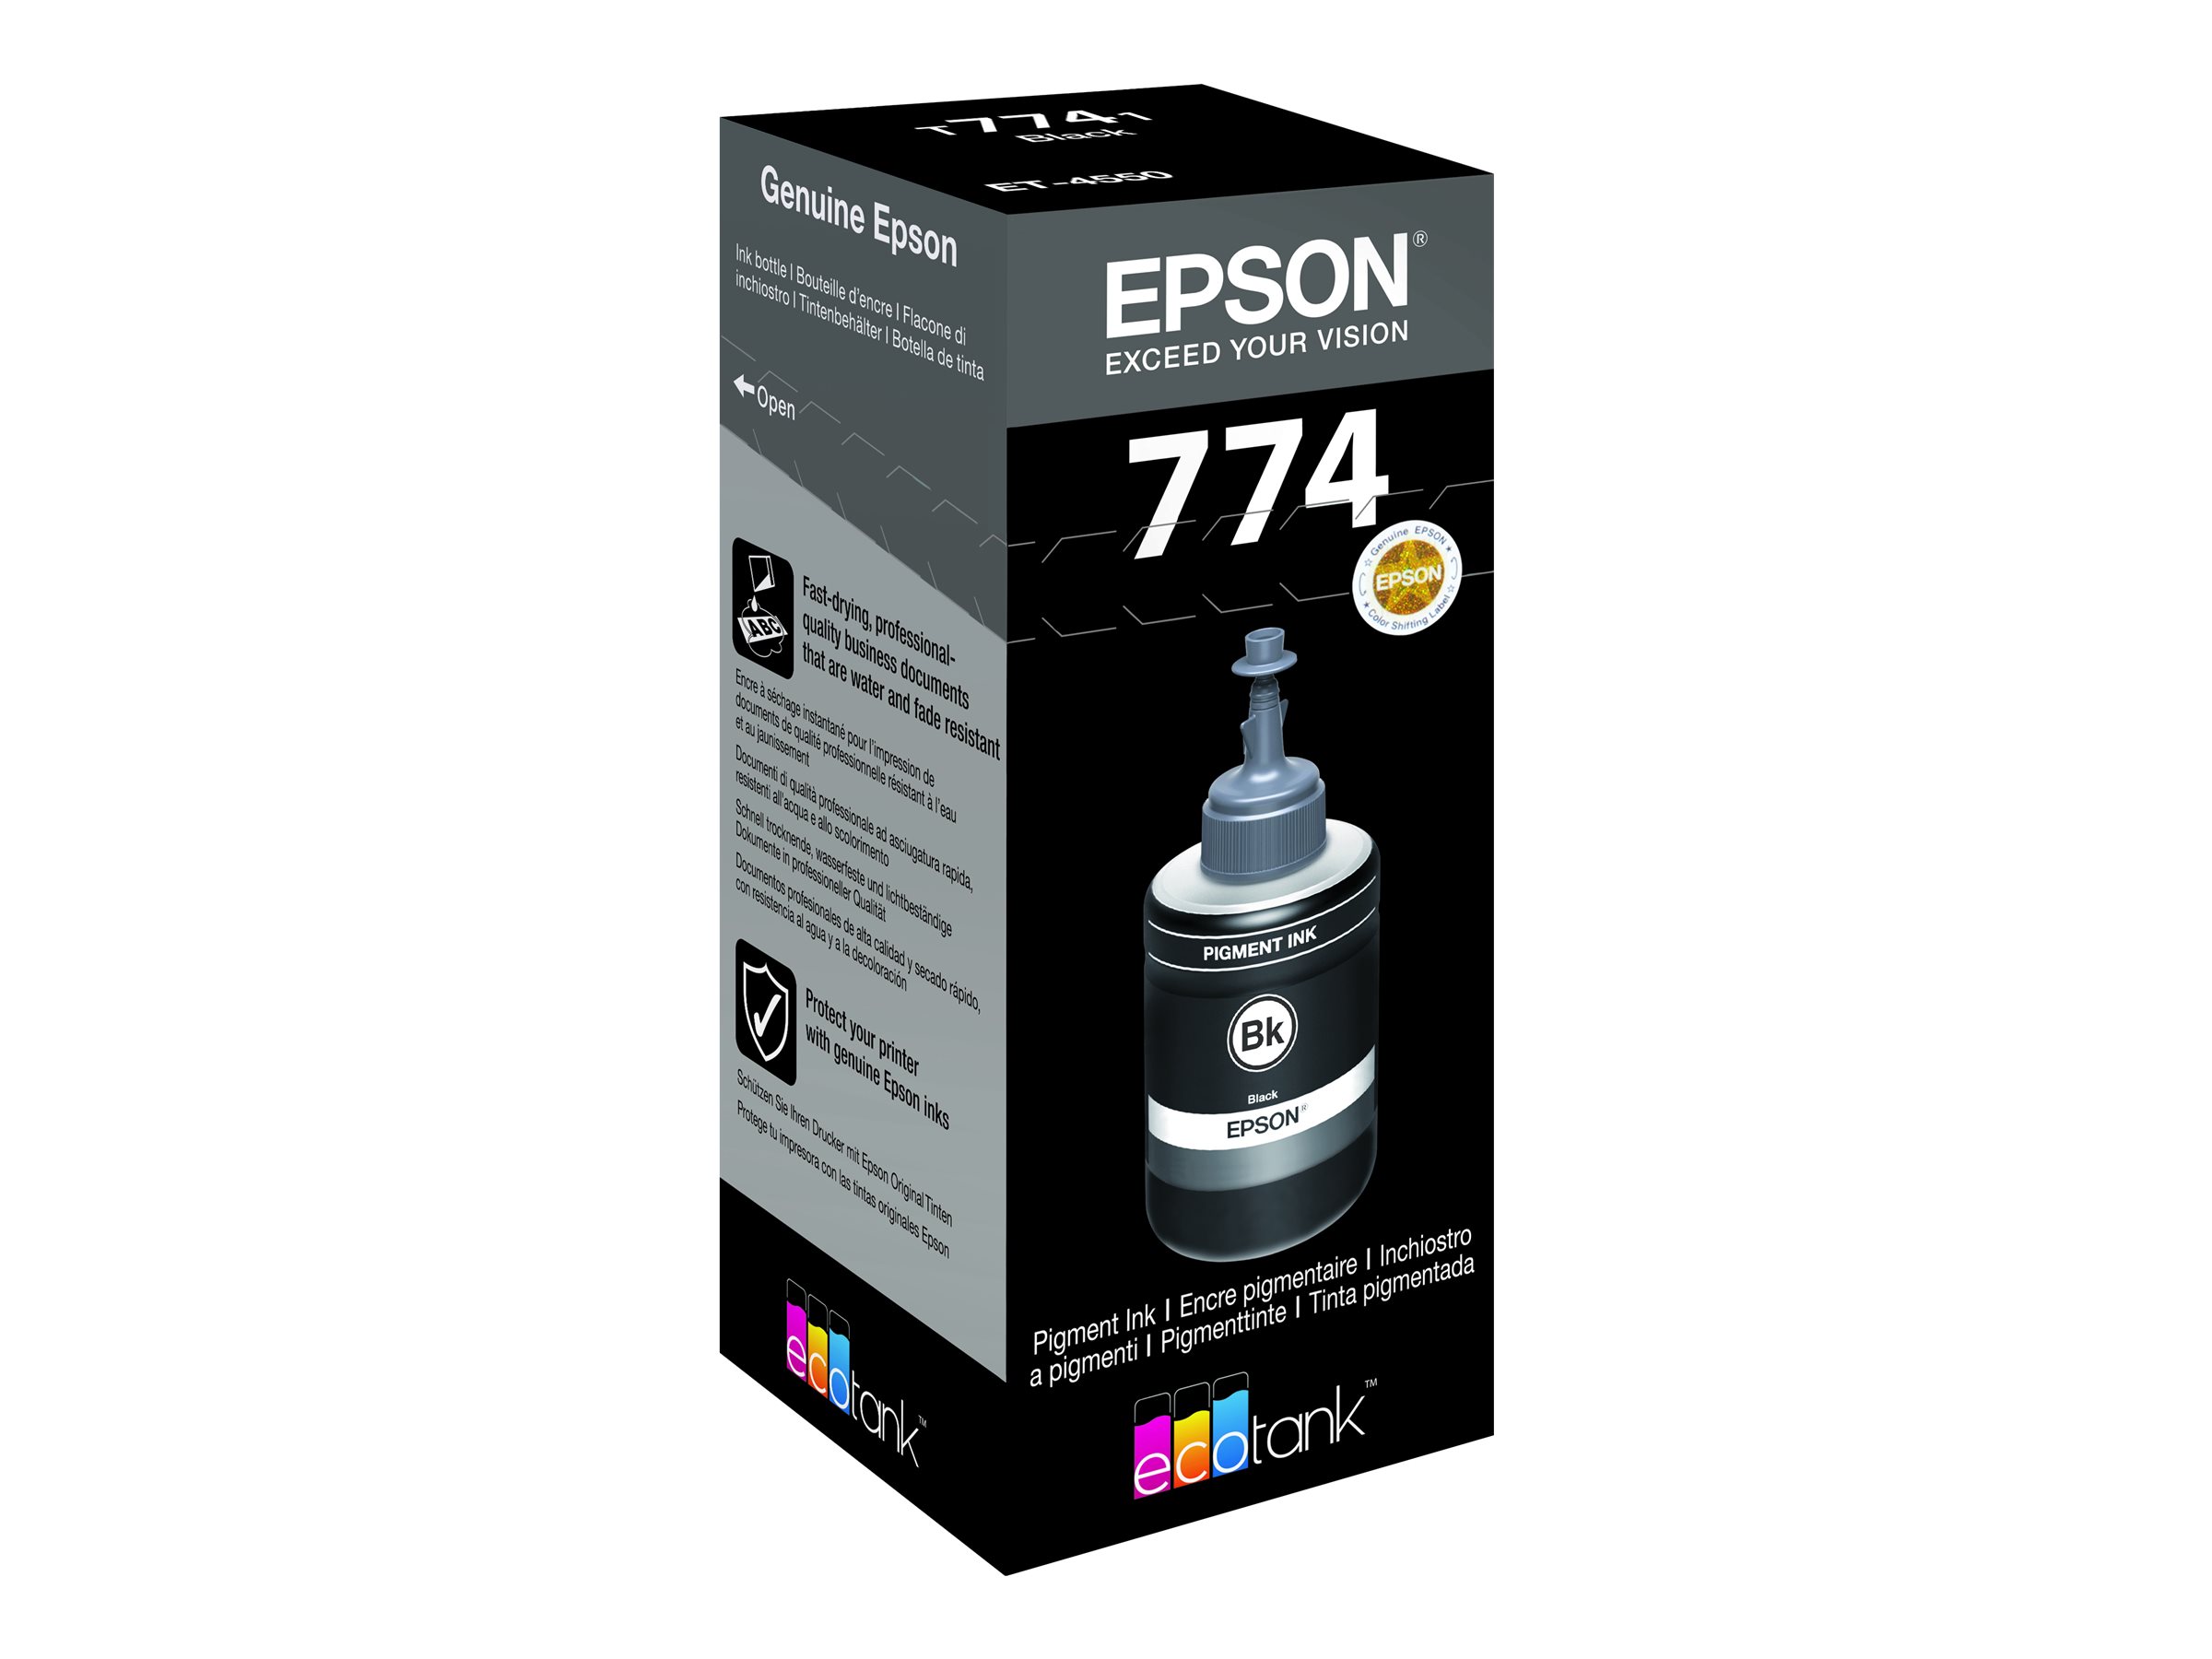 Epson T7741 - 140 ml - noir - original - recharge d'encre - pour EcoTank ET-16500, ET-3600, ET-4550, ET-4550 Stickers, M200 - C13T774140 - Cartouches d'encre Epson